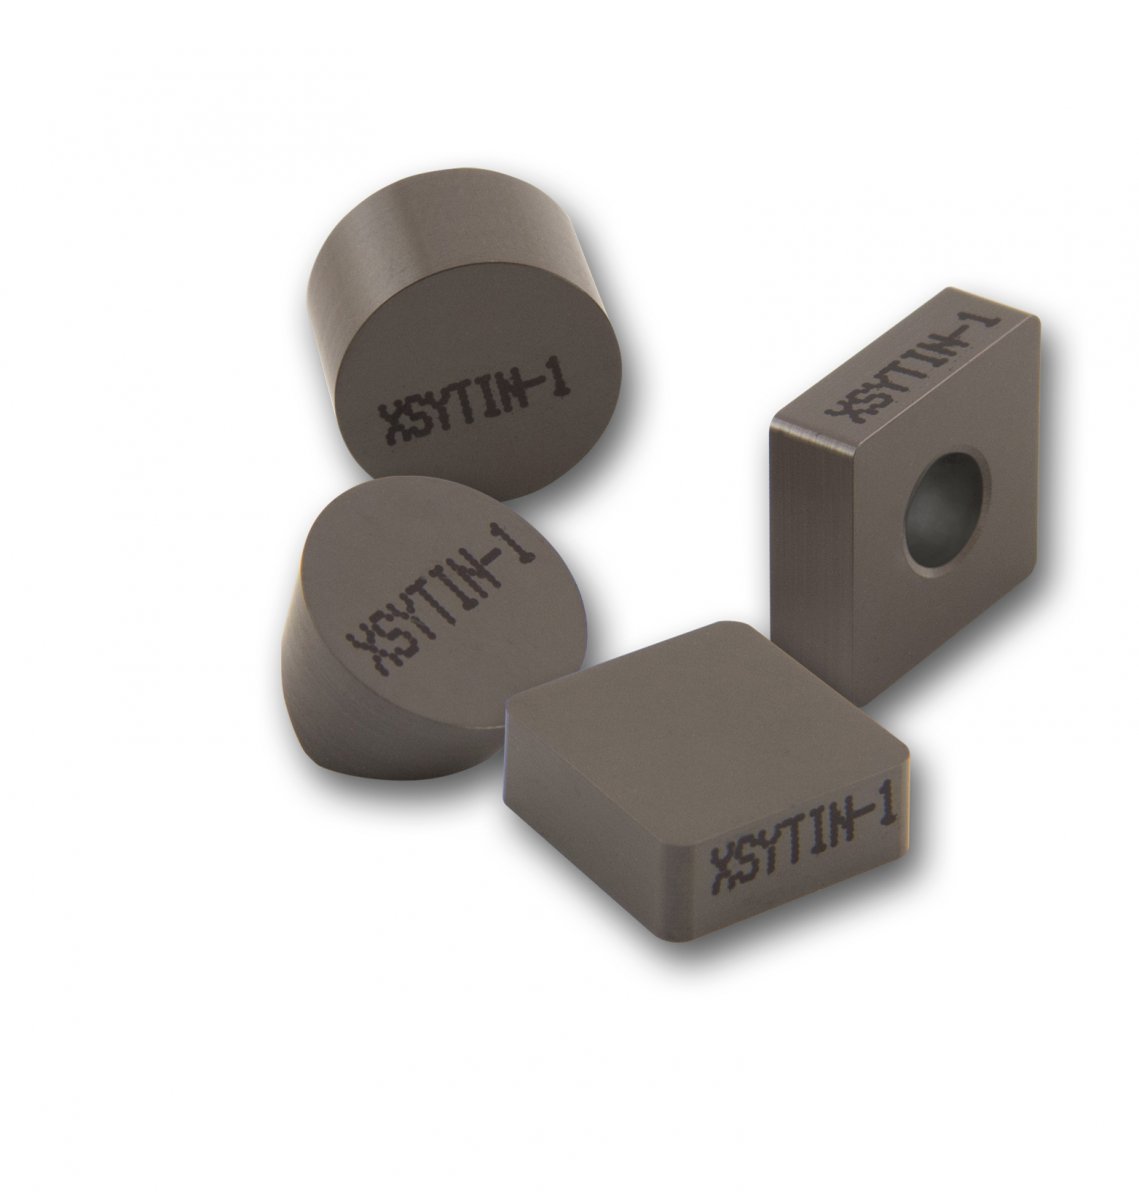 Керамика XSYTIN®-1 разработана  специально для обработки труднообрабатываемых материалов с очень агрессивной подачей инструмента